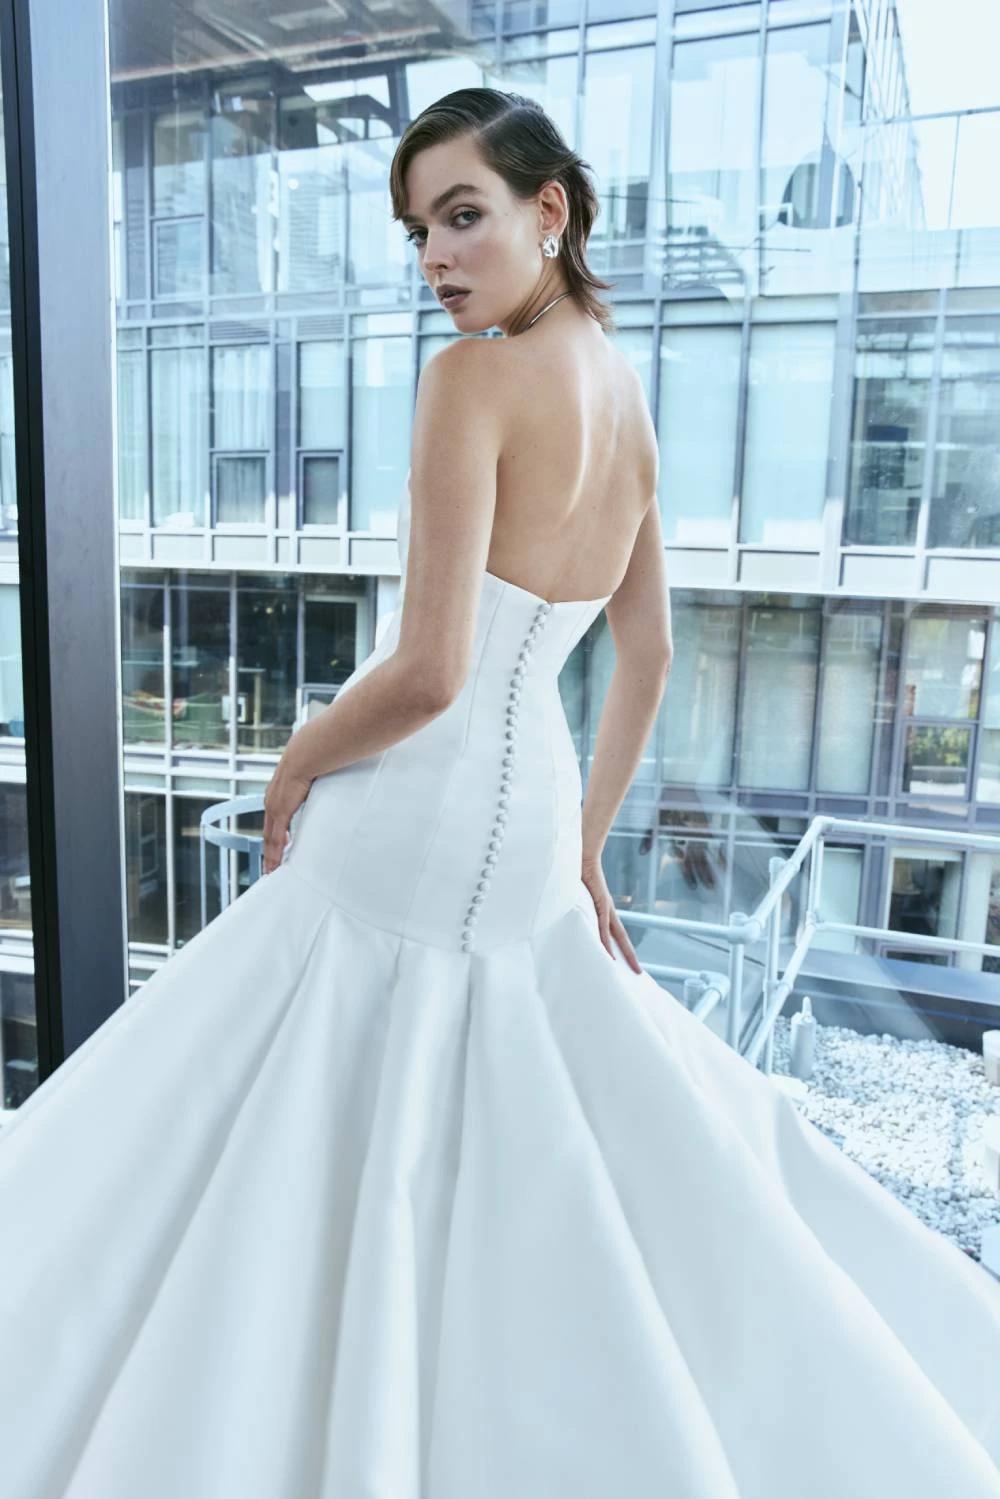 Model wearing a white dress by Rita Vinieris